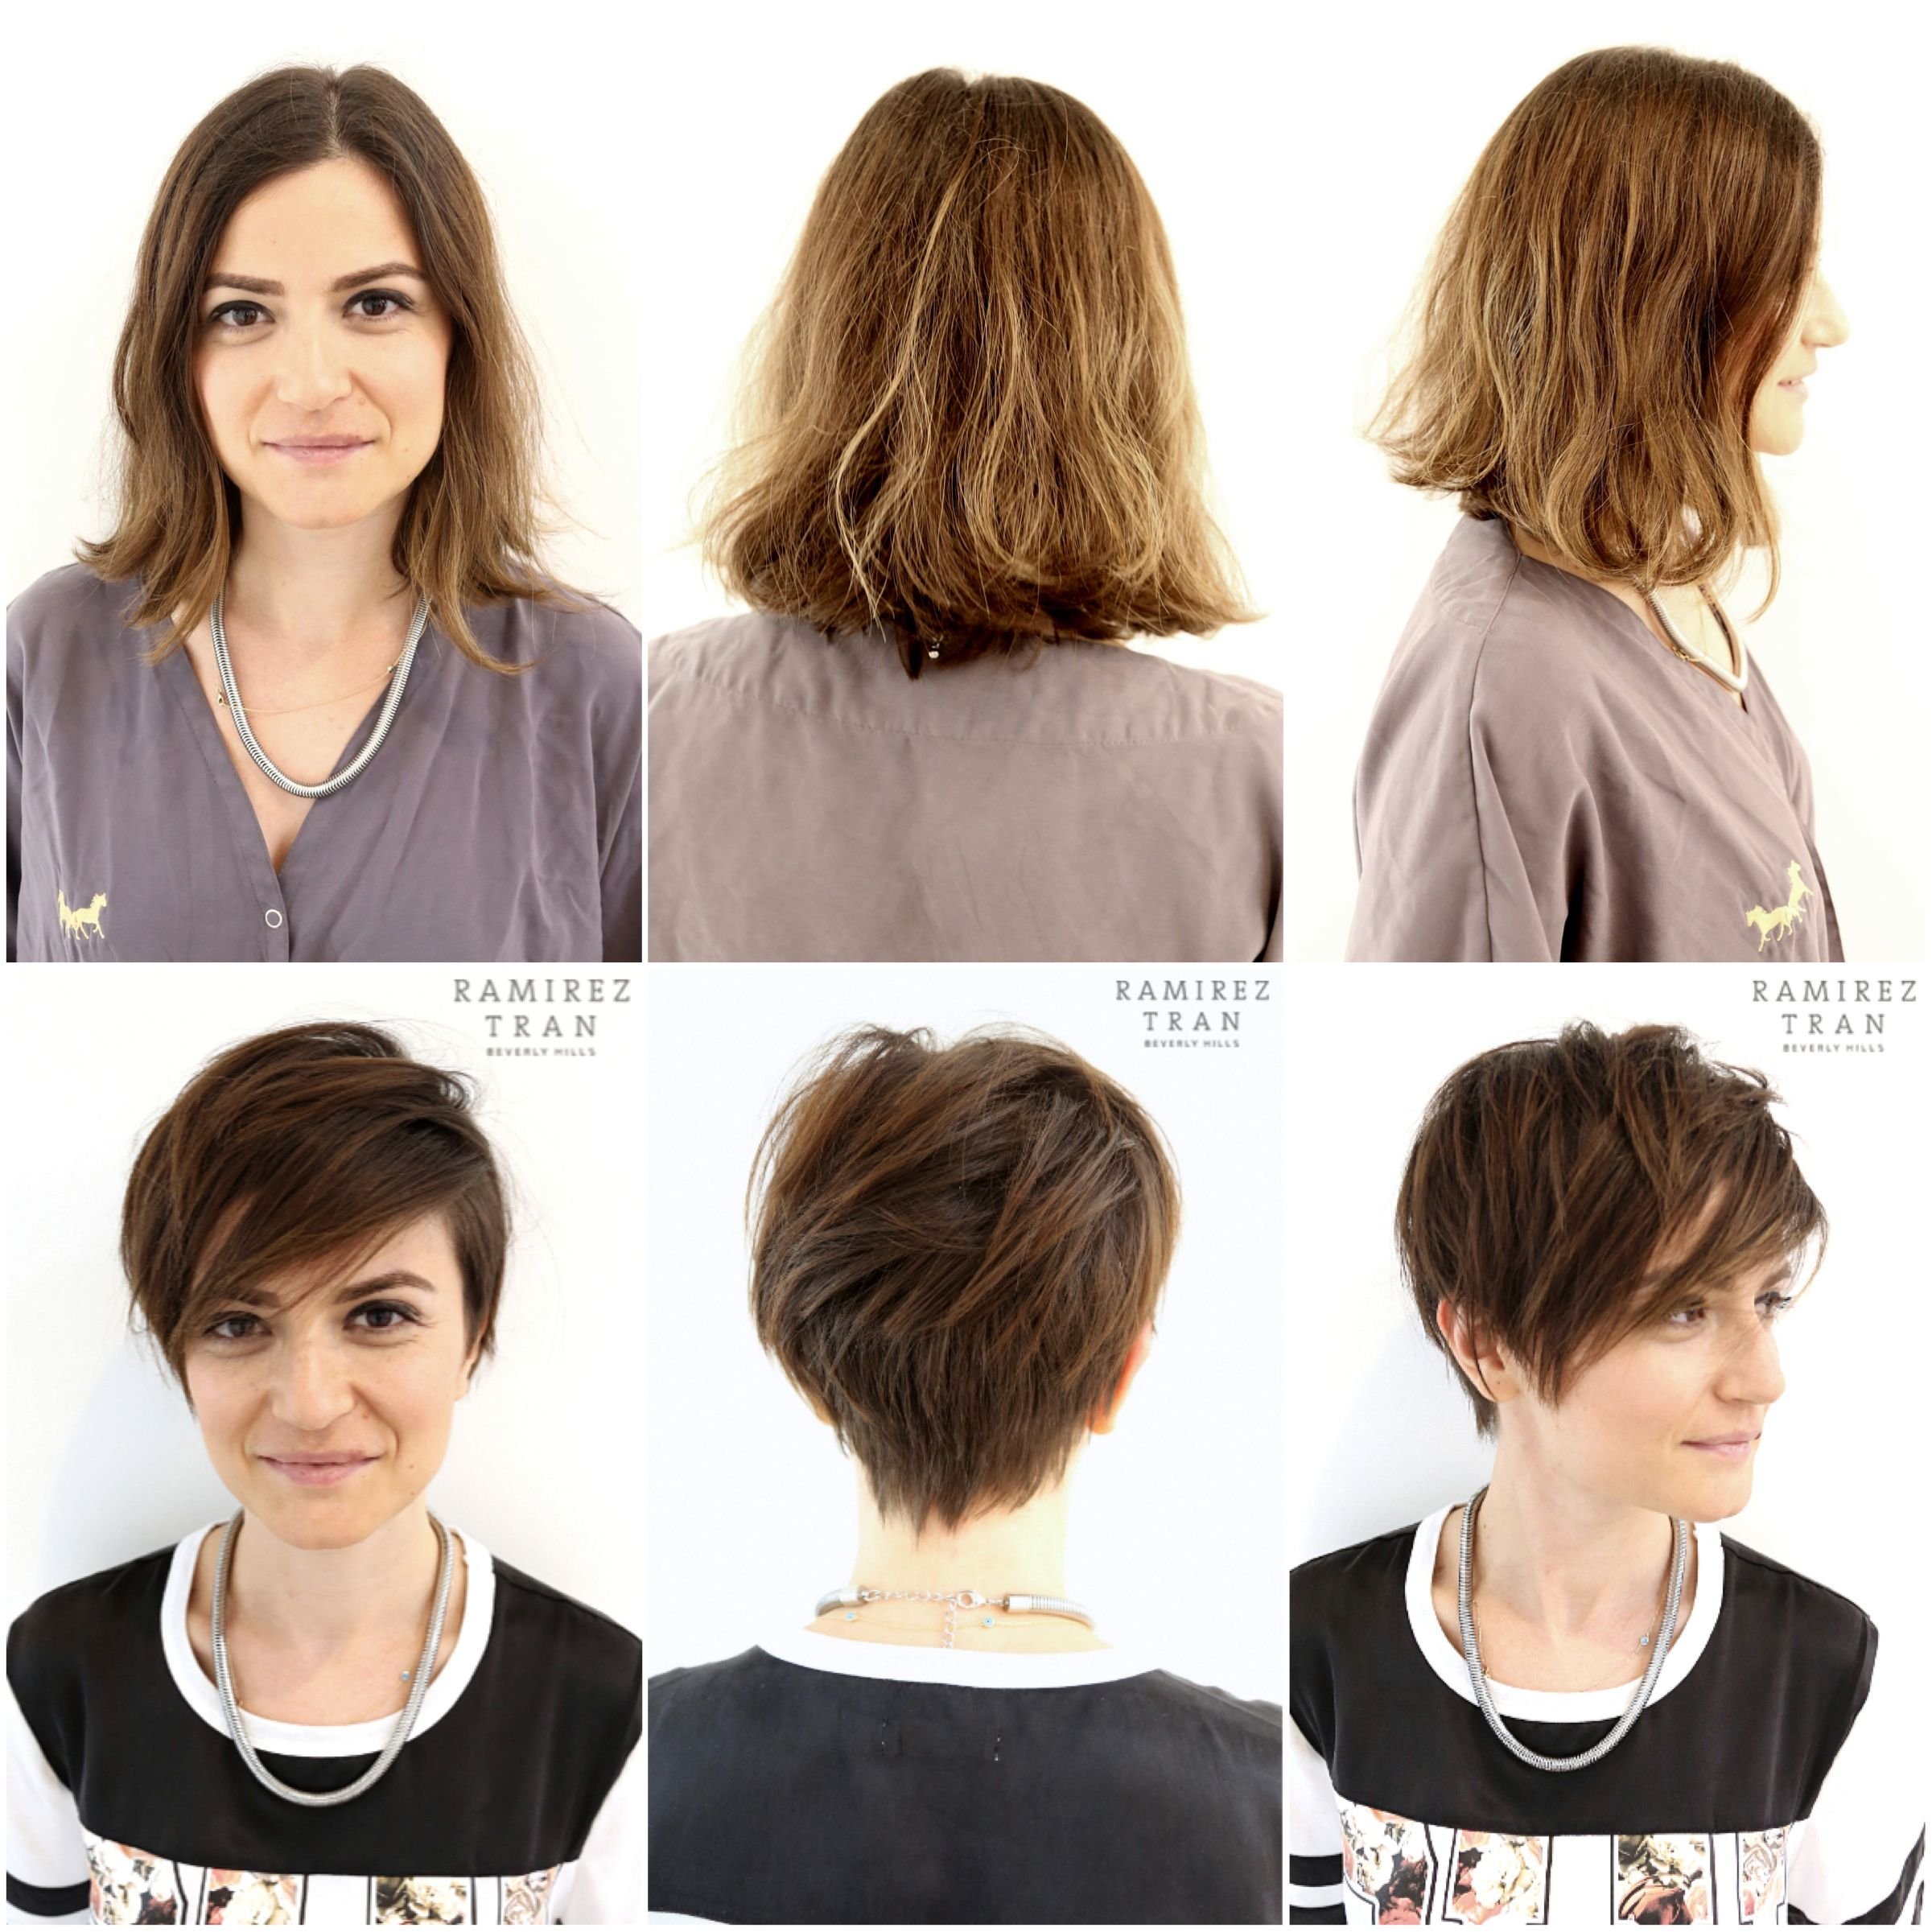 Как отрастить волосы после короткой стрижки девушке: этапы и фото